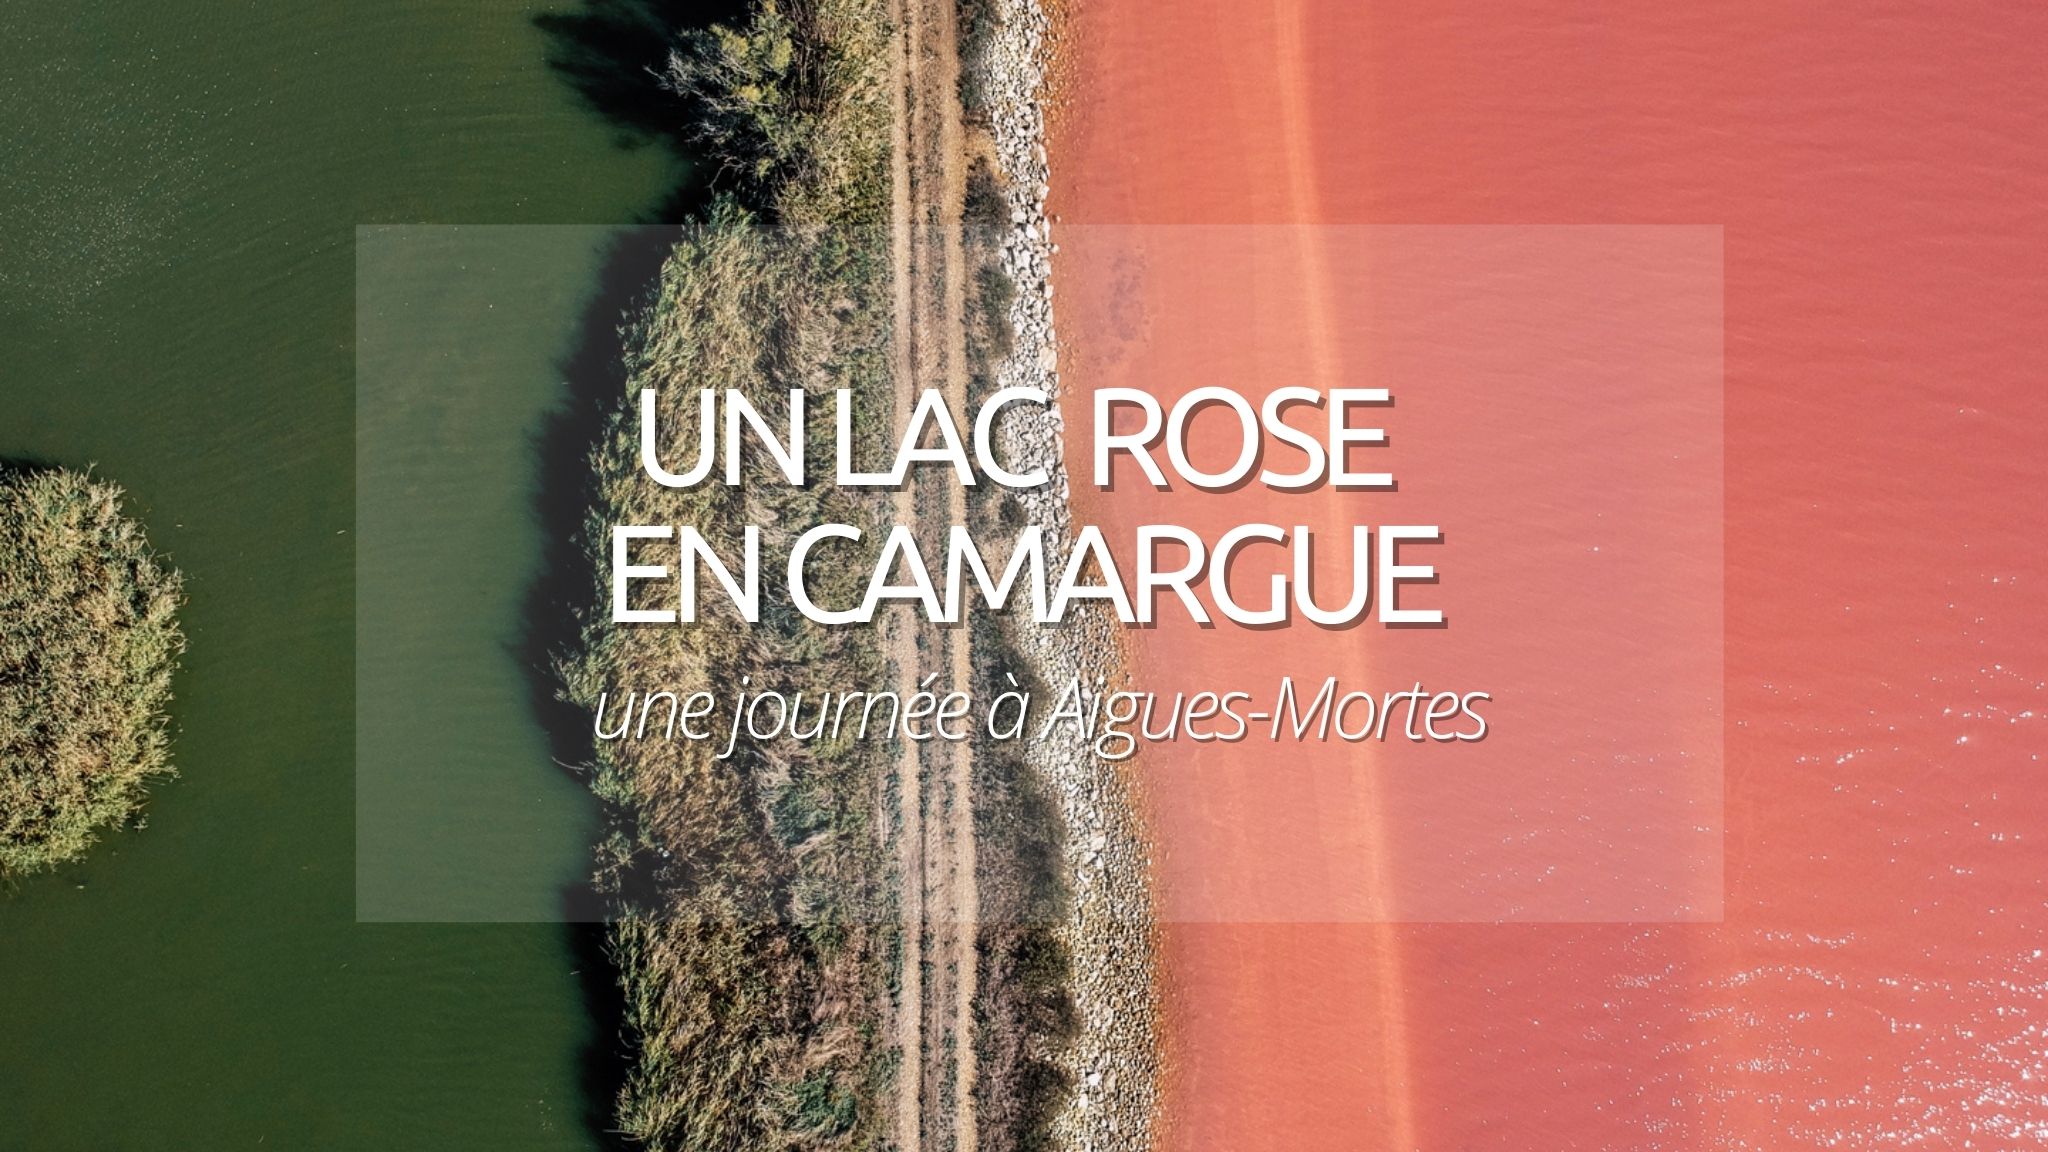 Découverte curieuse : Aigues-Mortes et son lac rose en Camargue